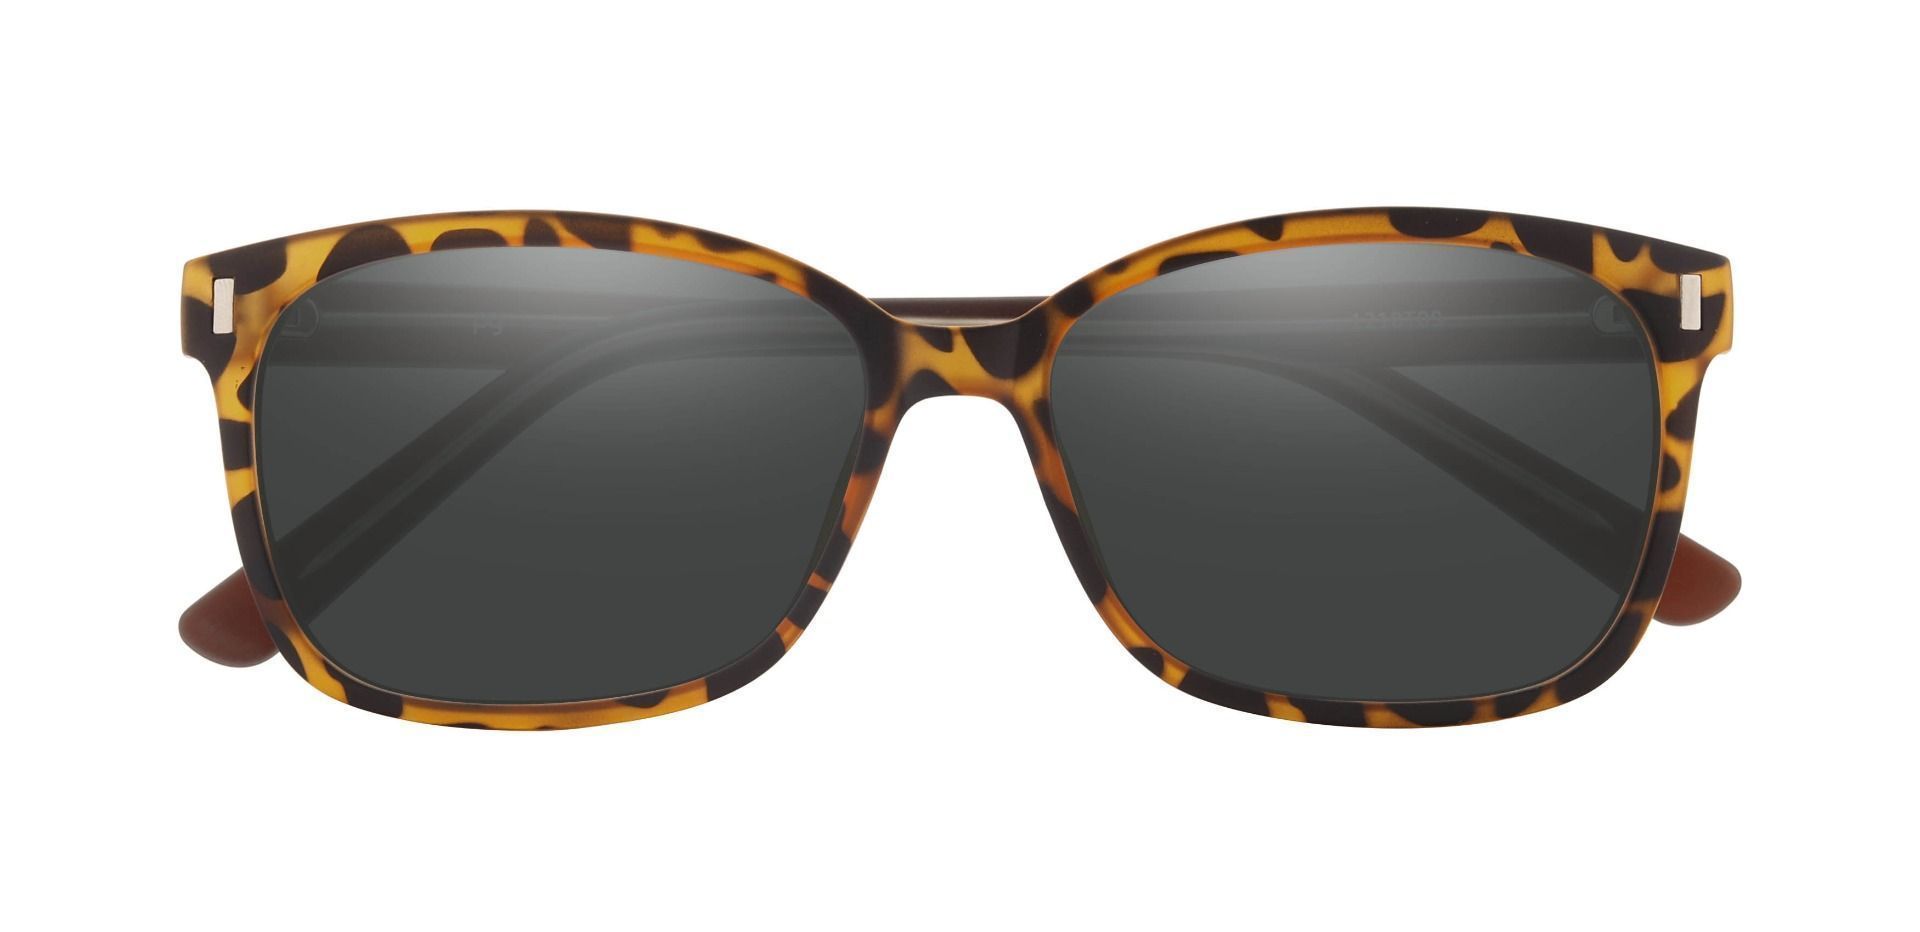 Landry Square Prescription Sunglasses - Tortoise Frame With Gray Lenses ...